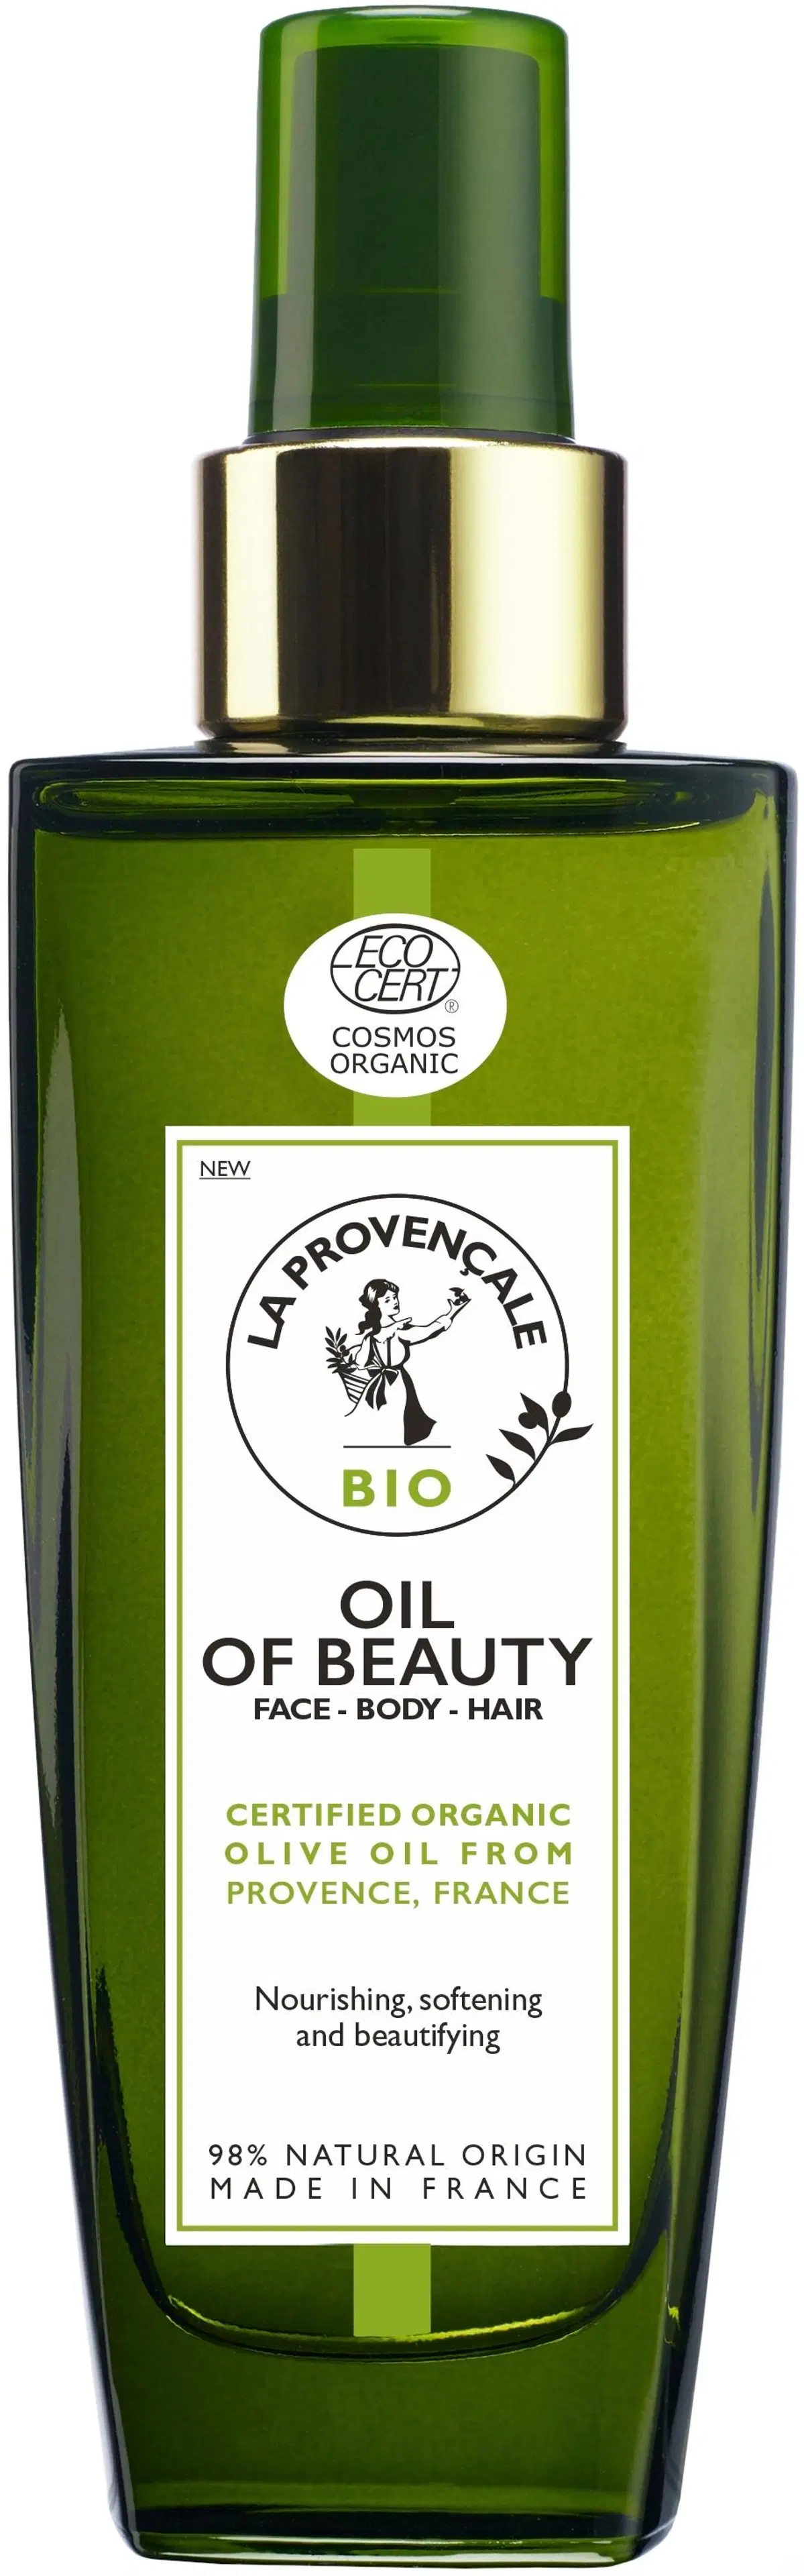 La Provençale Bio Oil of Beauty kuivaöljy kasvoille, vartalolle ja hiuksille 100ml